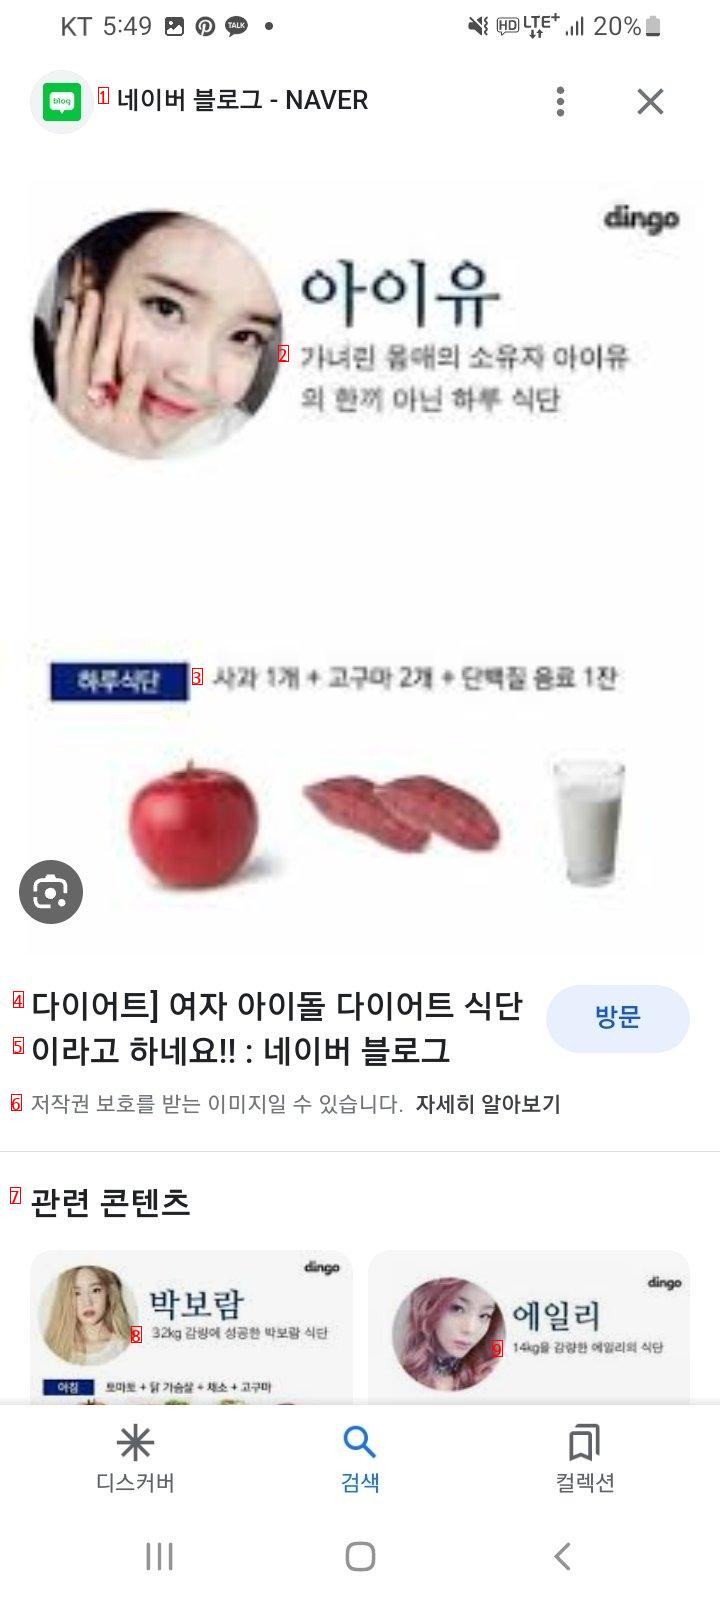 ㅎㄷㄷ한 수지 아이유 강민경 식단